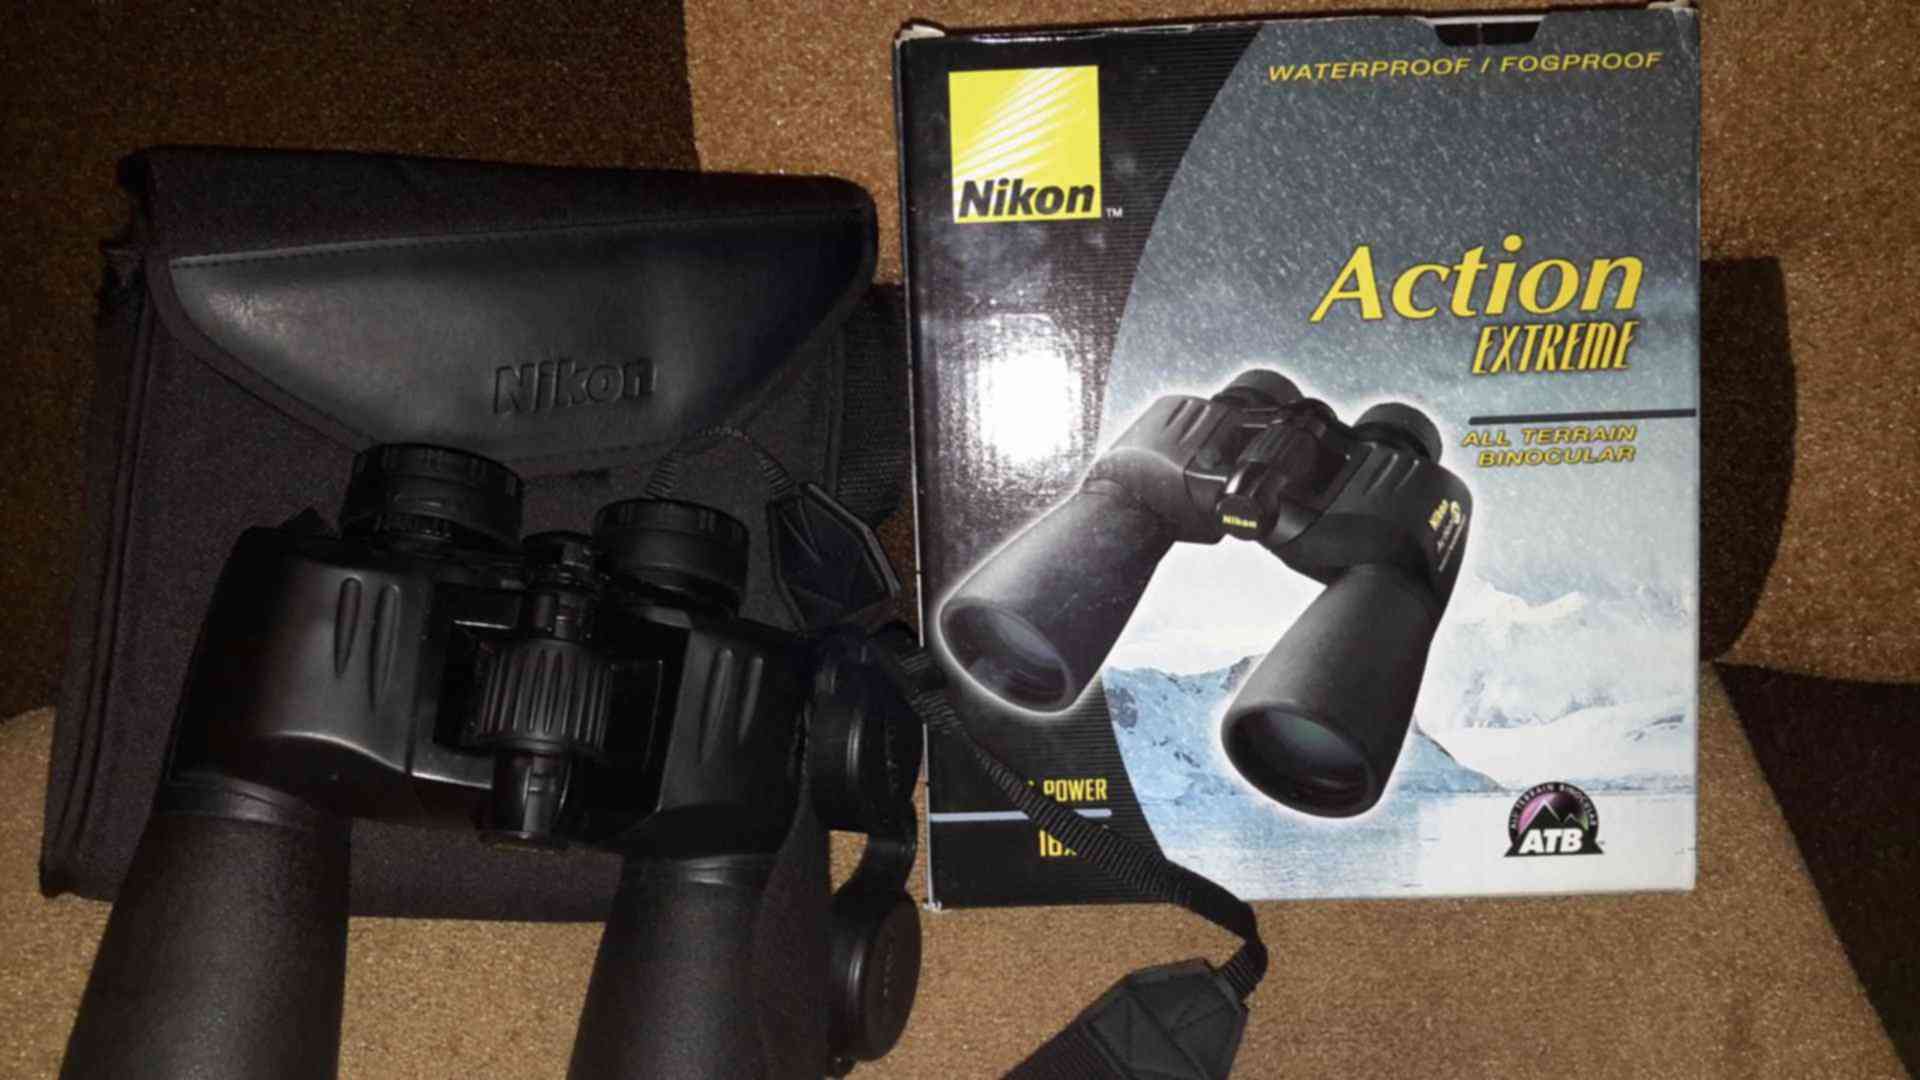 16 action. Бинокль Nikon Action ex wp 16x50 CF. Nikon Action 10x50 бинокль Binocular Glasses. Прибор ночного видения - бинокль Nikon Action ex 16х50мм.